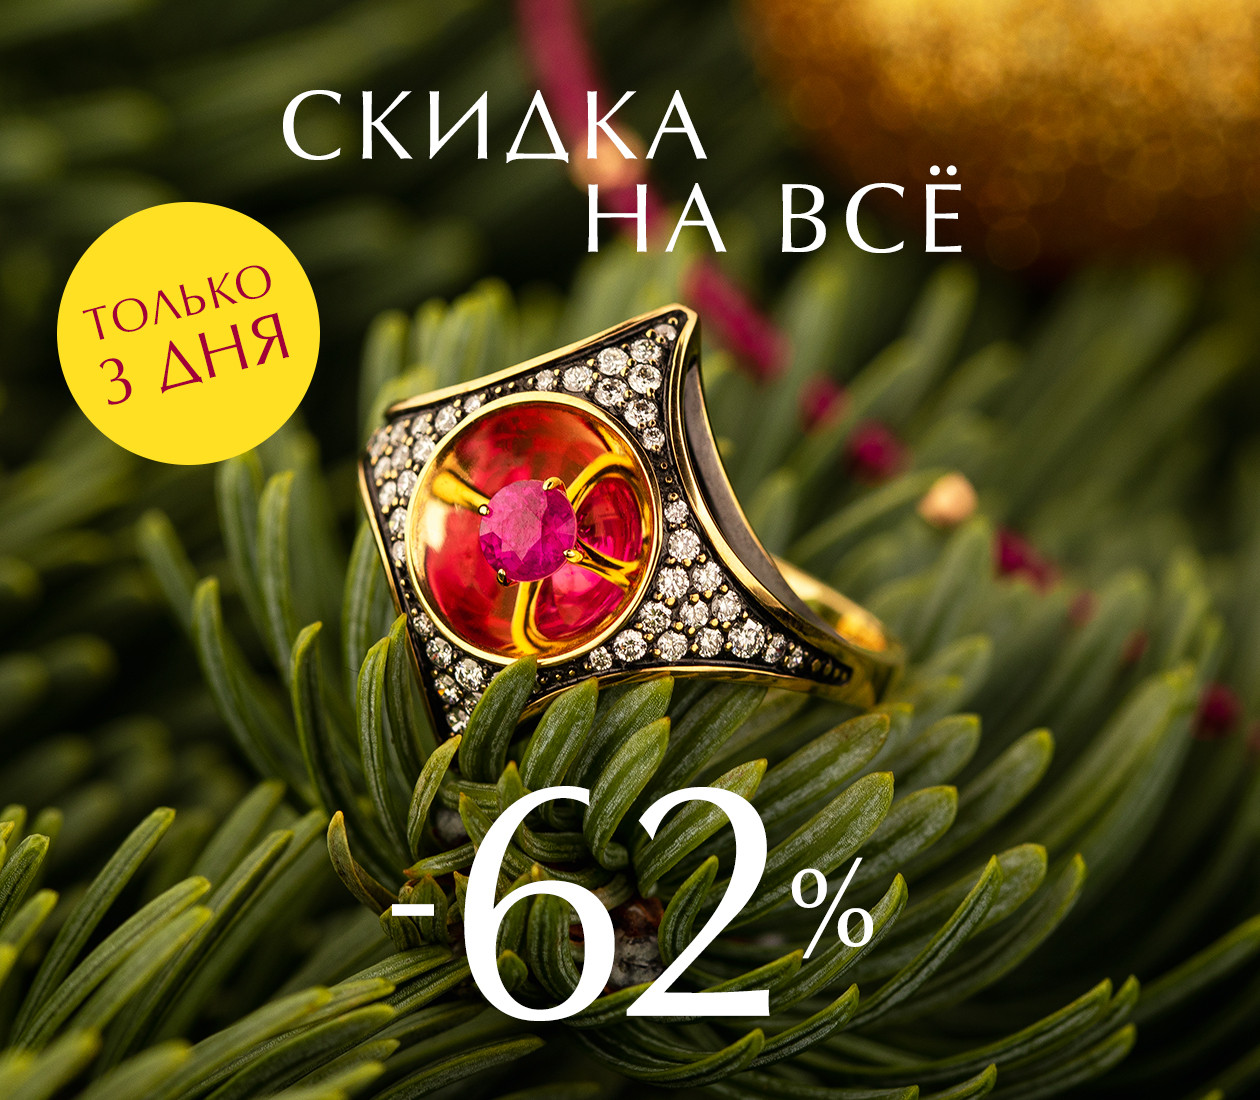 -62% НА ВСЁ